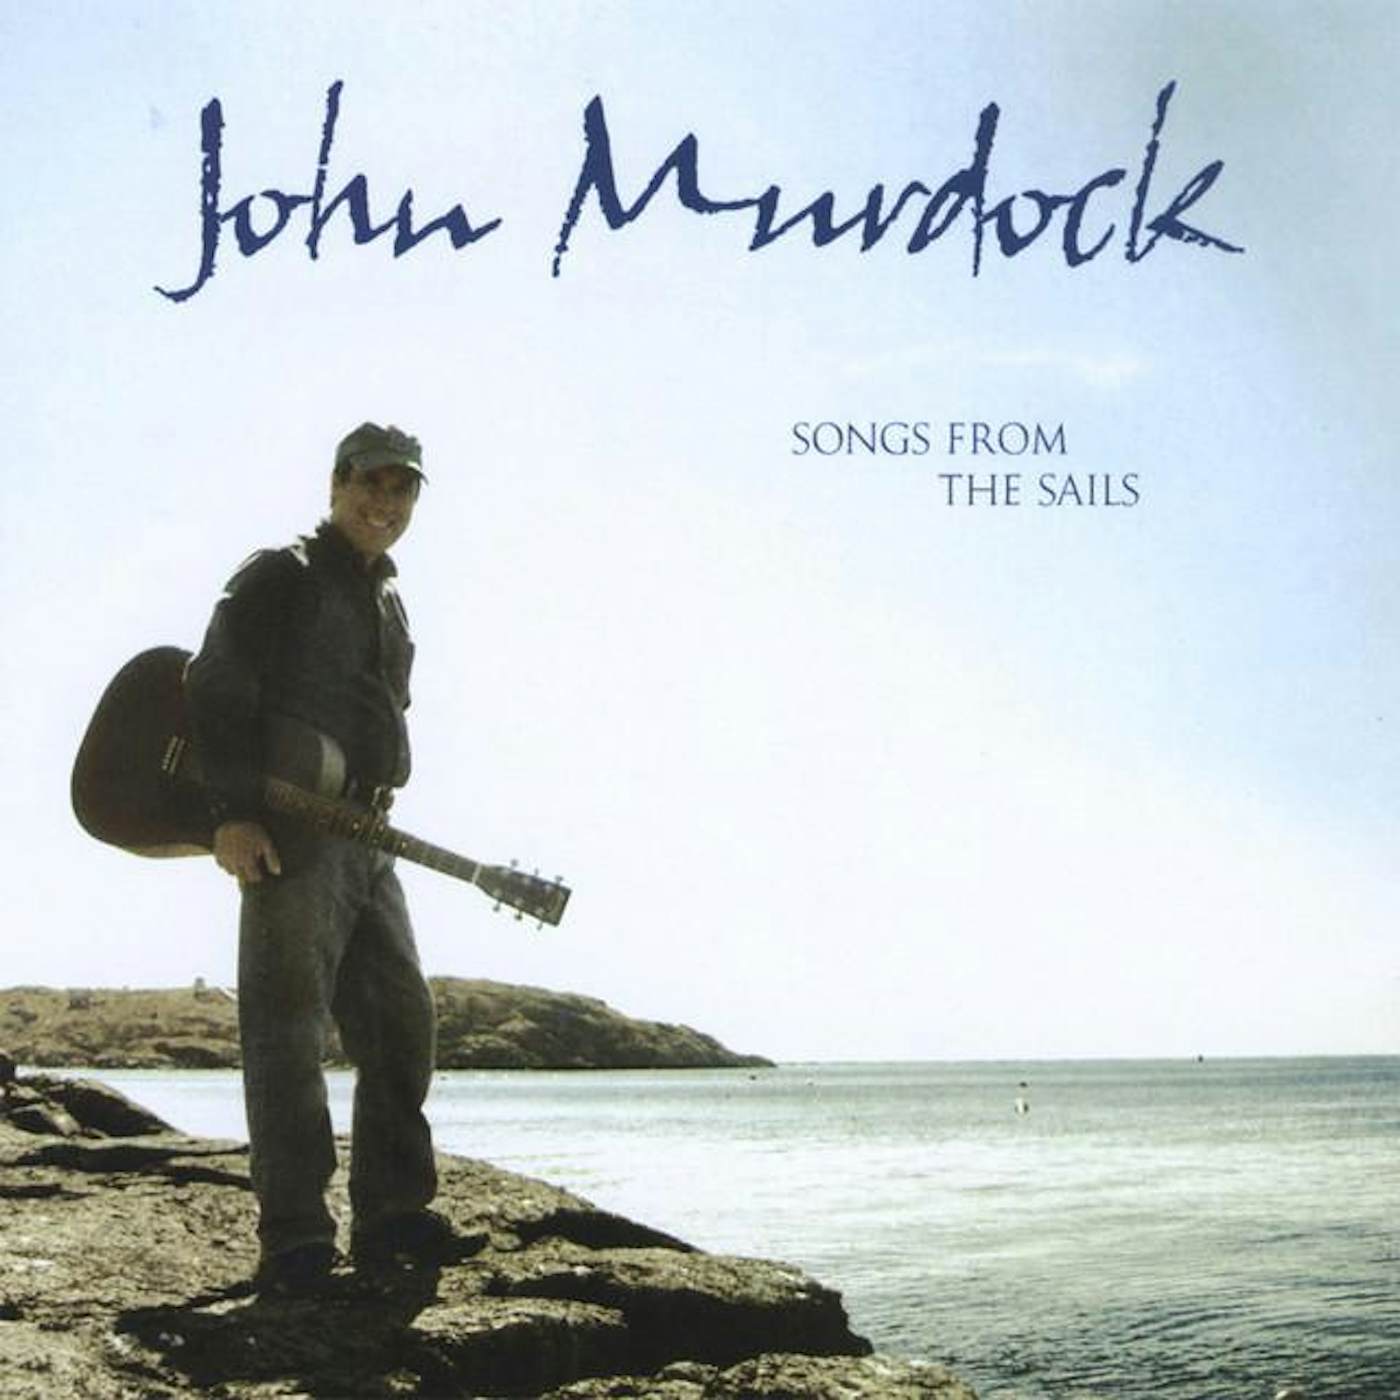 John Murdock